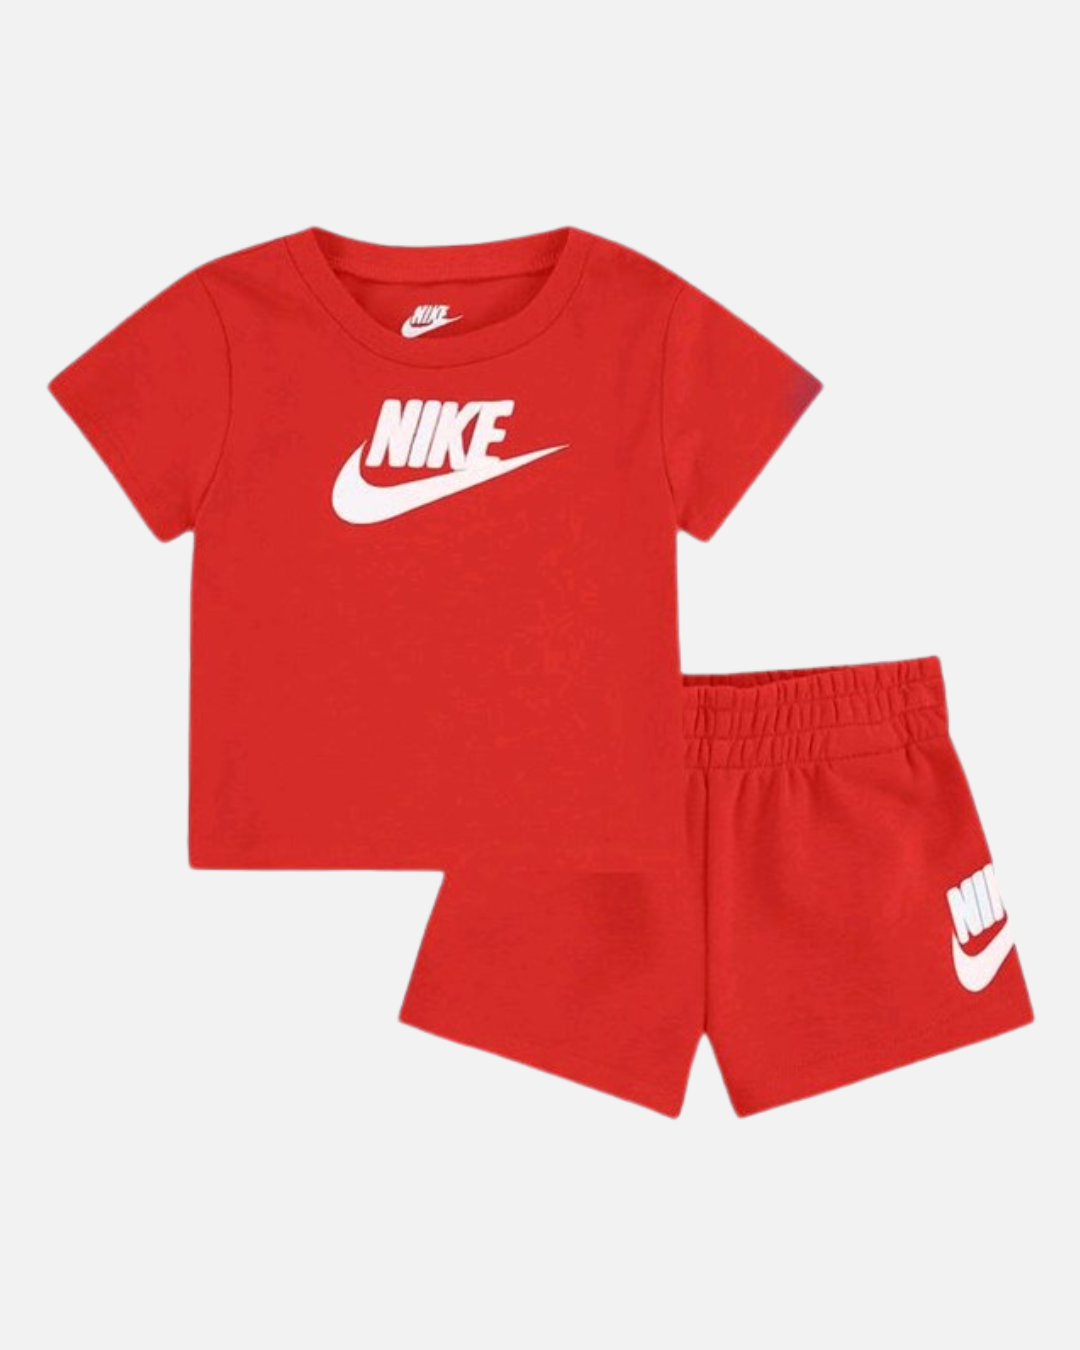 Completo Nike per bambini - Rosso